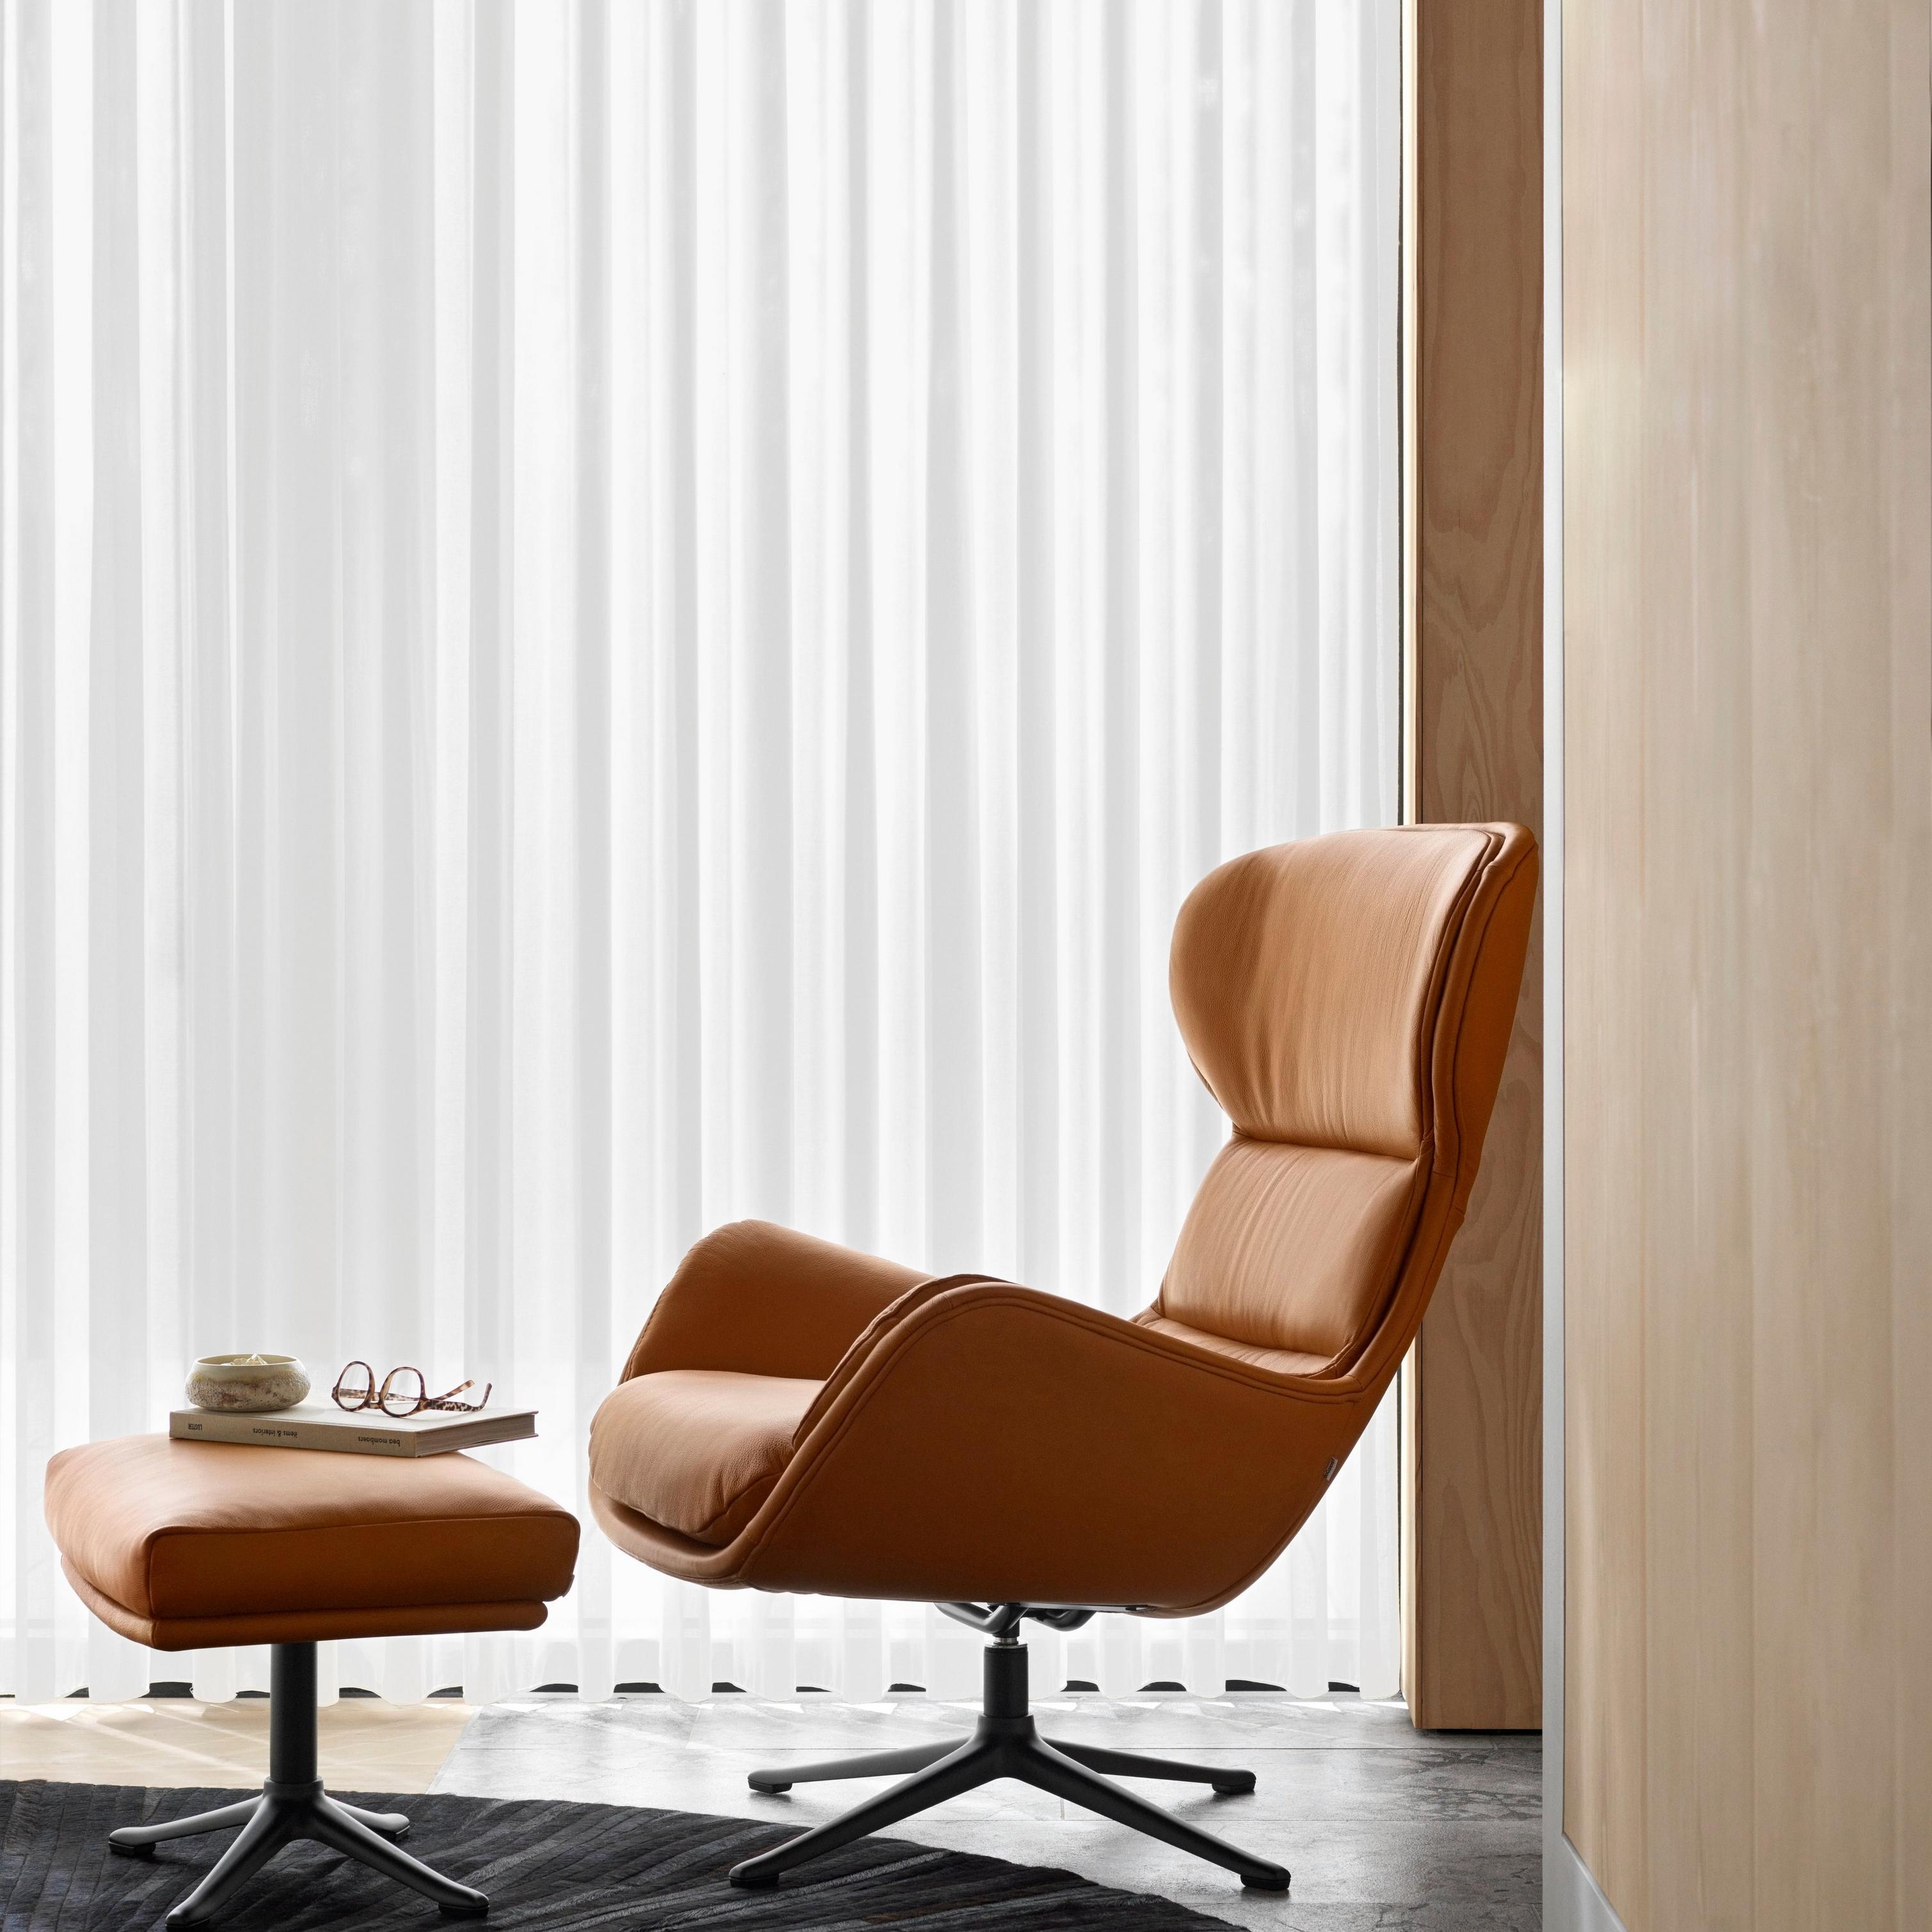 デザイナーラグ | デンマークデザインの家具 | ボーコンセプト